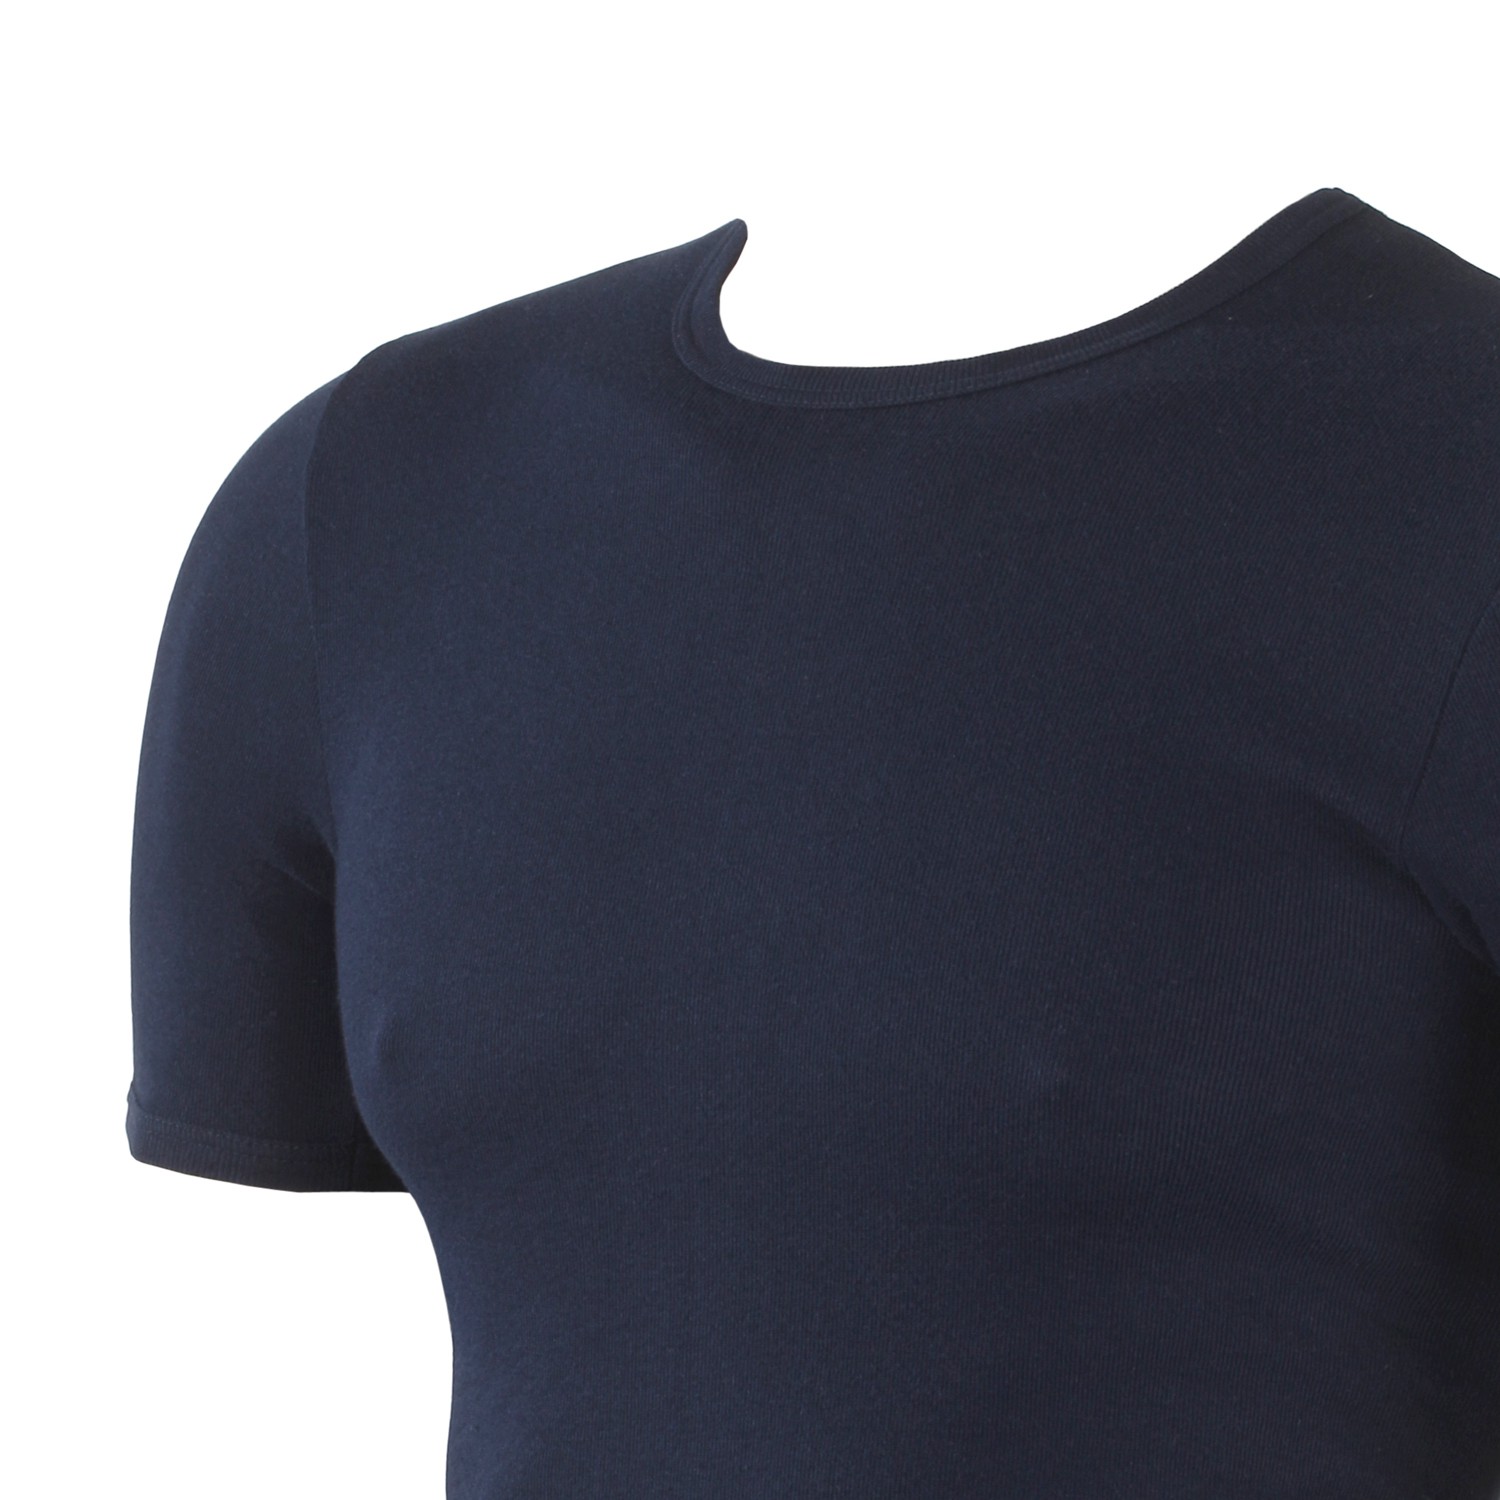 Dunkelblaues T-Shirt - Feinripp - KAPART // XXL Größen